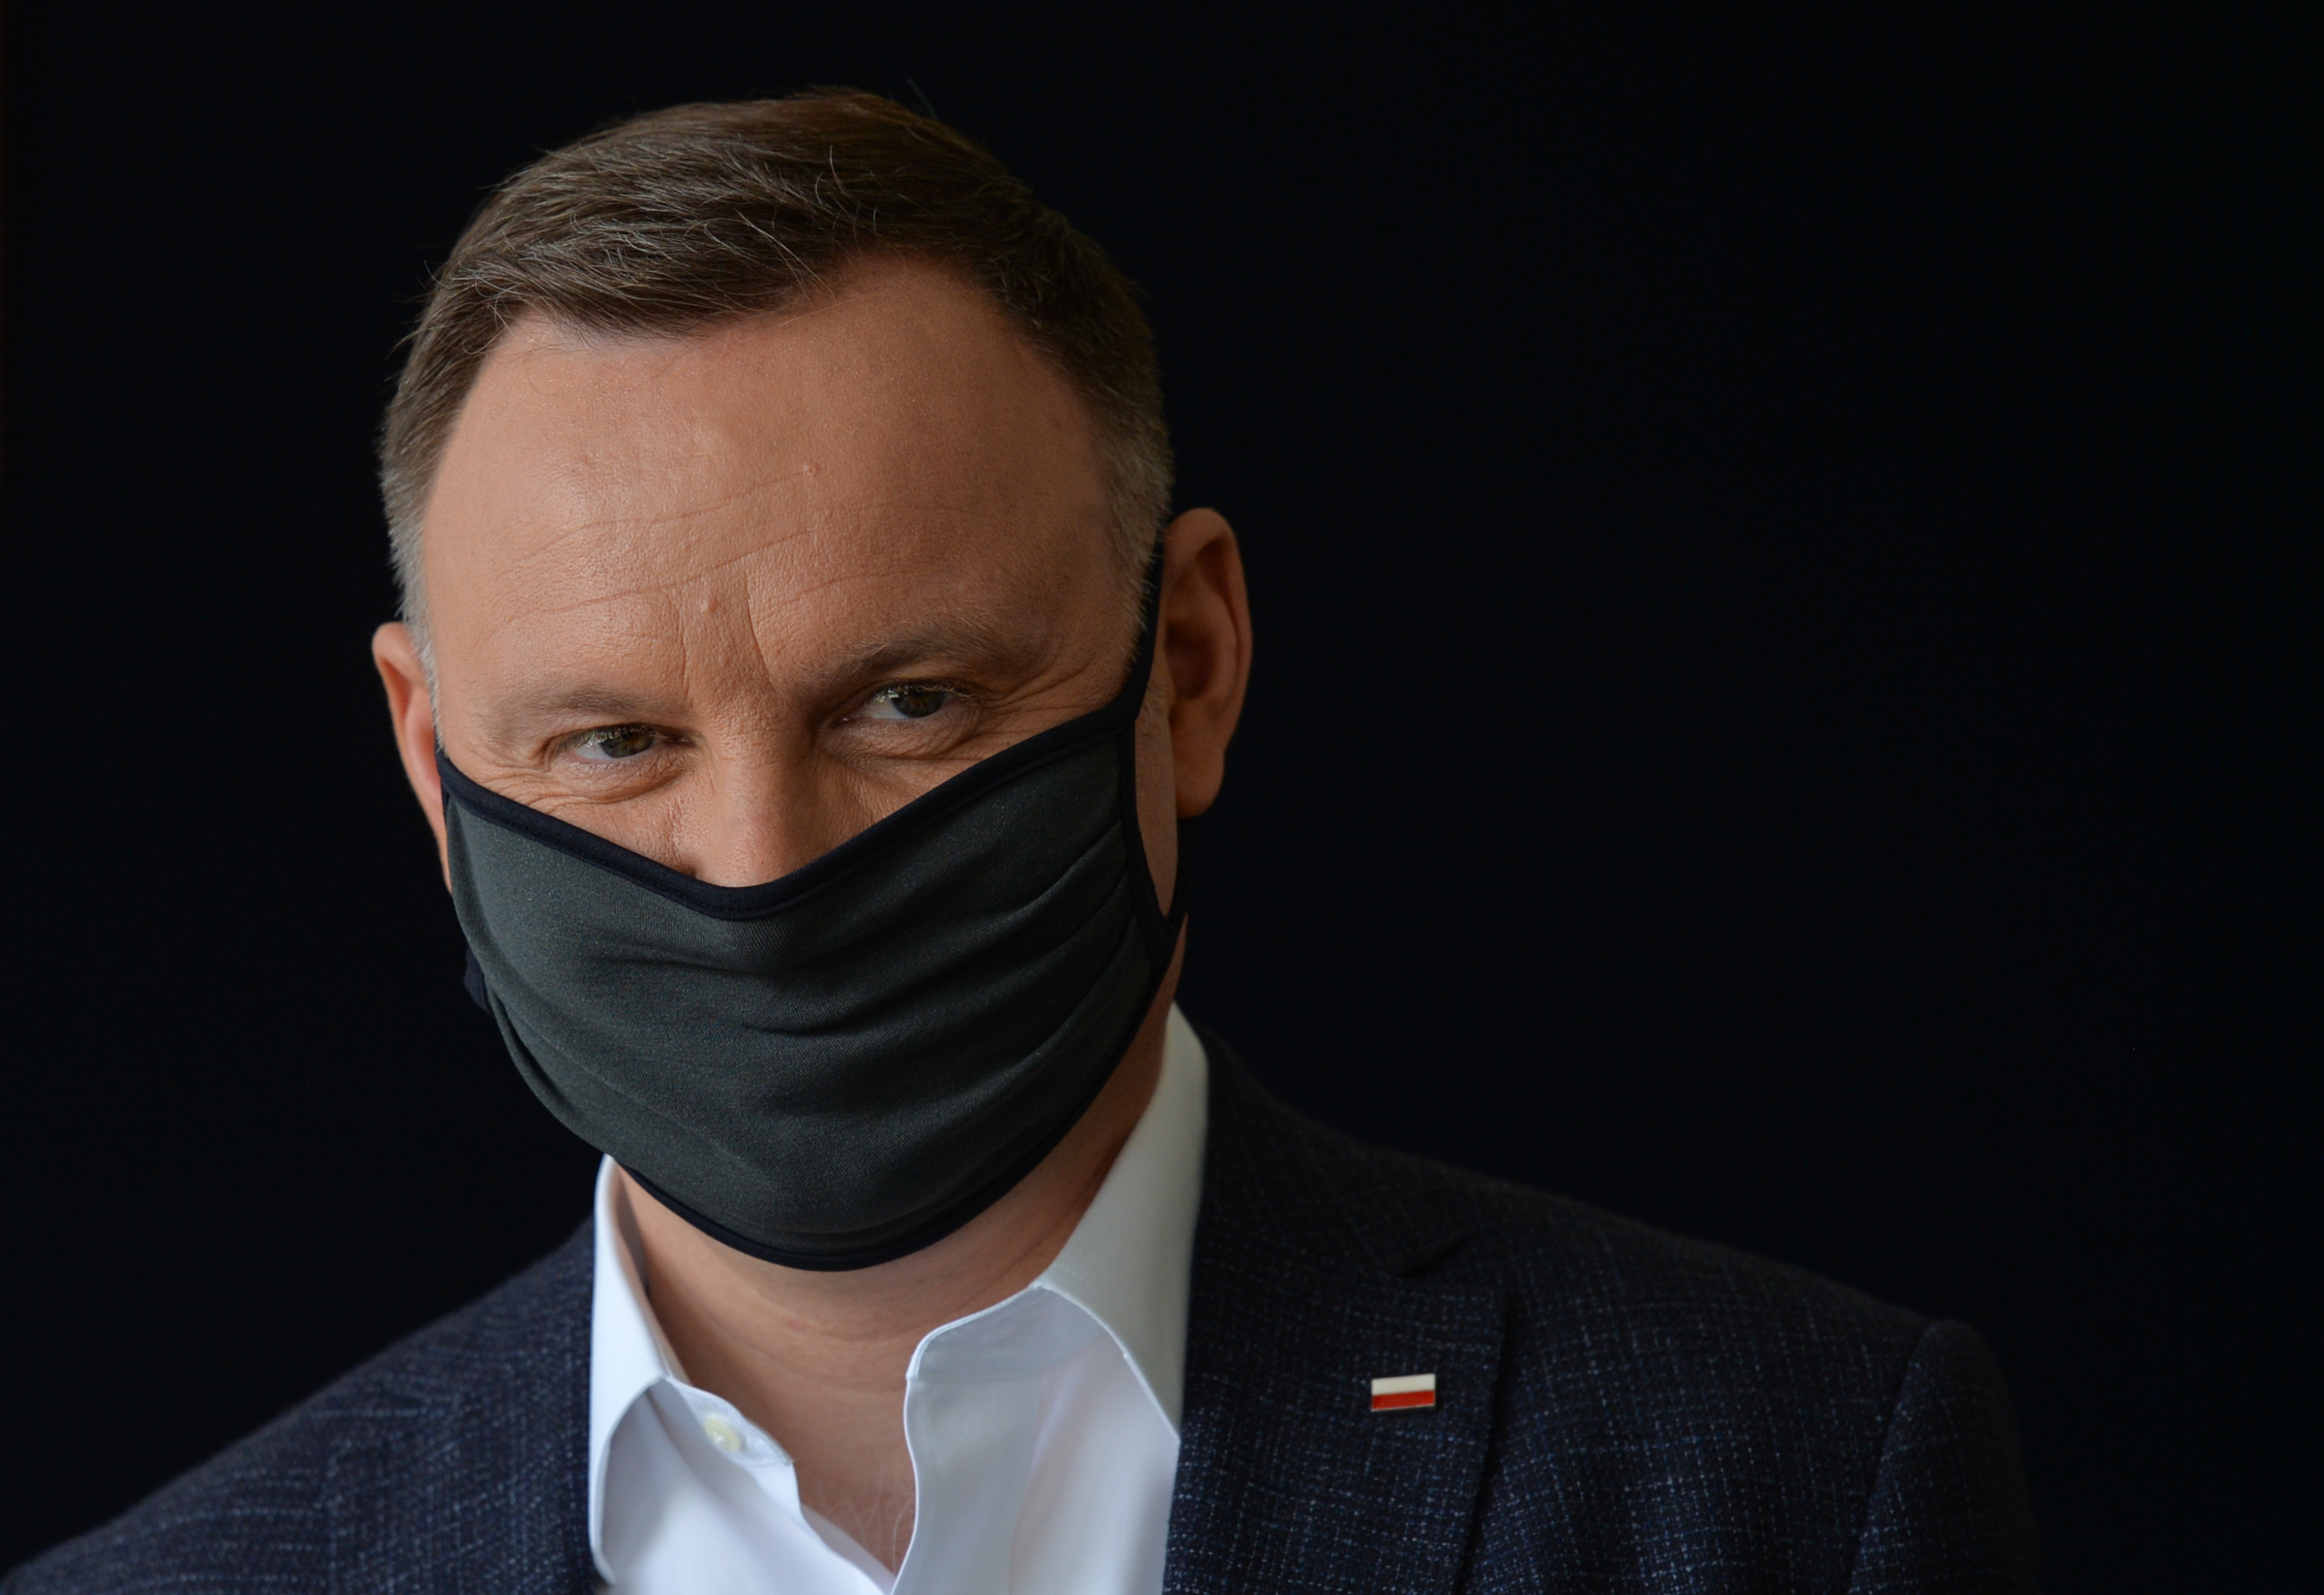 Papírforma a lengyel elnökválasztáson: Duda nyeri az első fordulót az exit pollok szerint